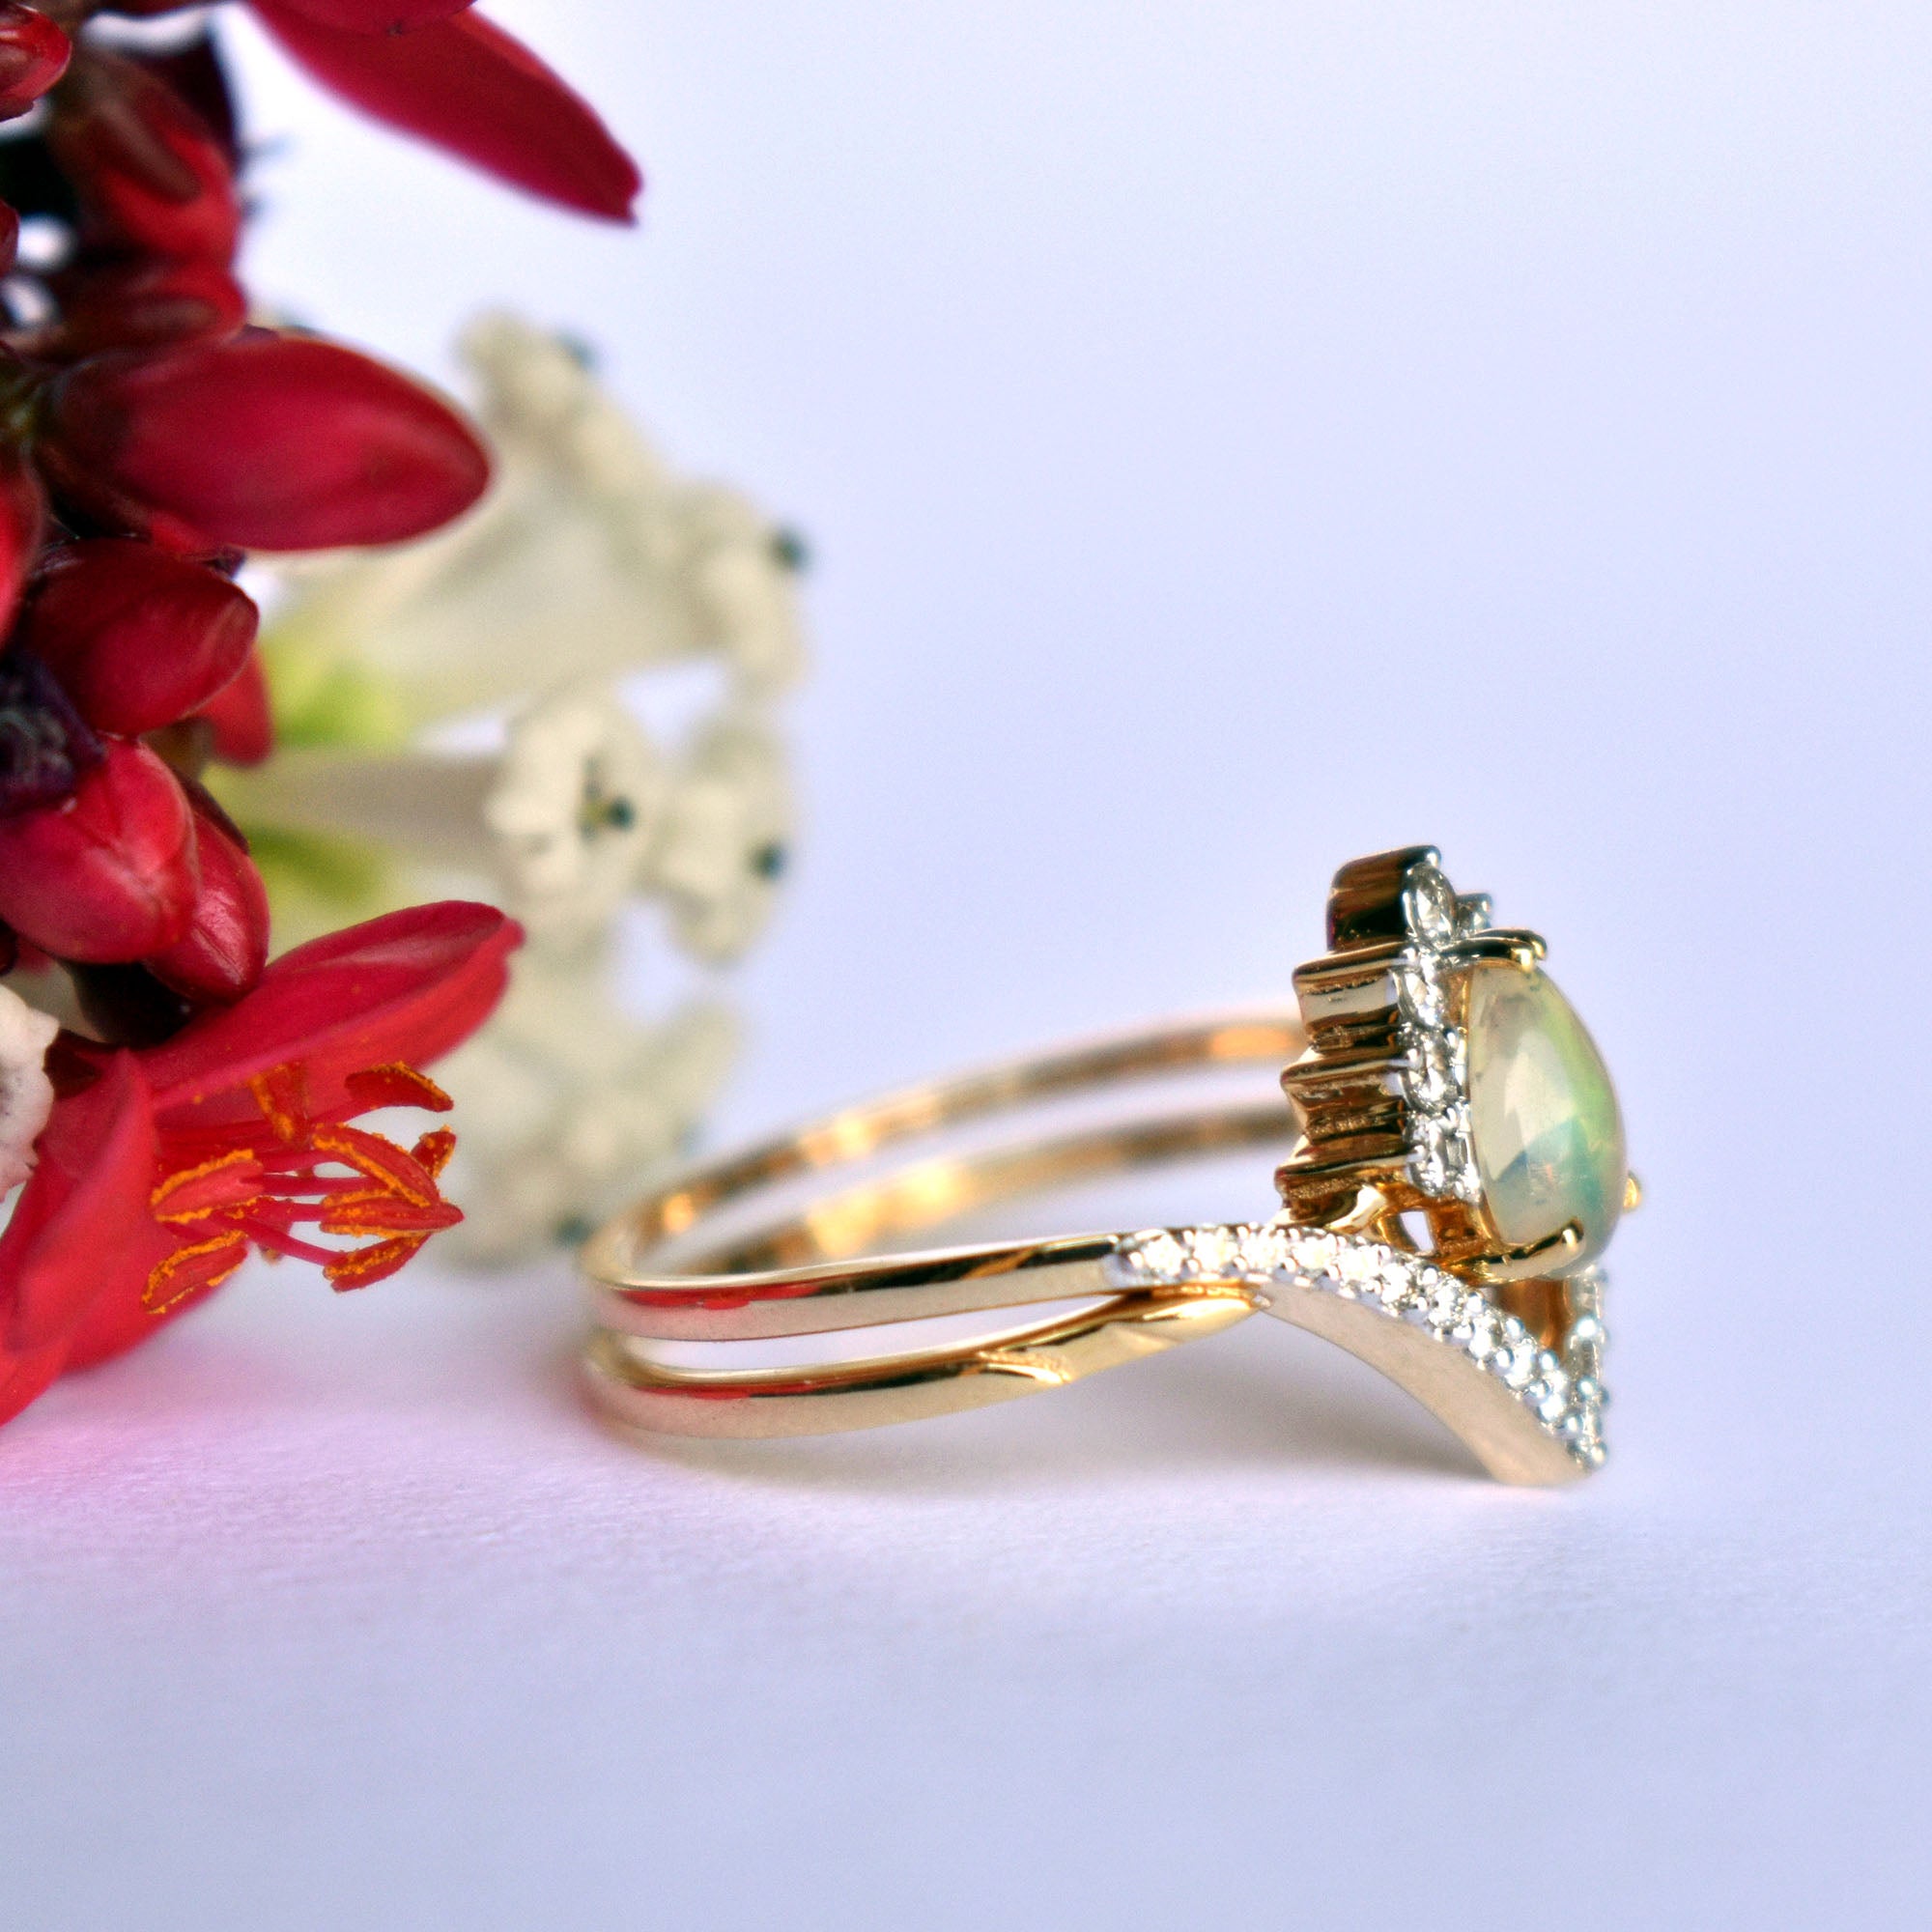 Premium Photo | Two wedding rings interlocked on white satin